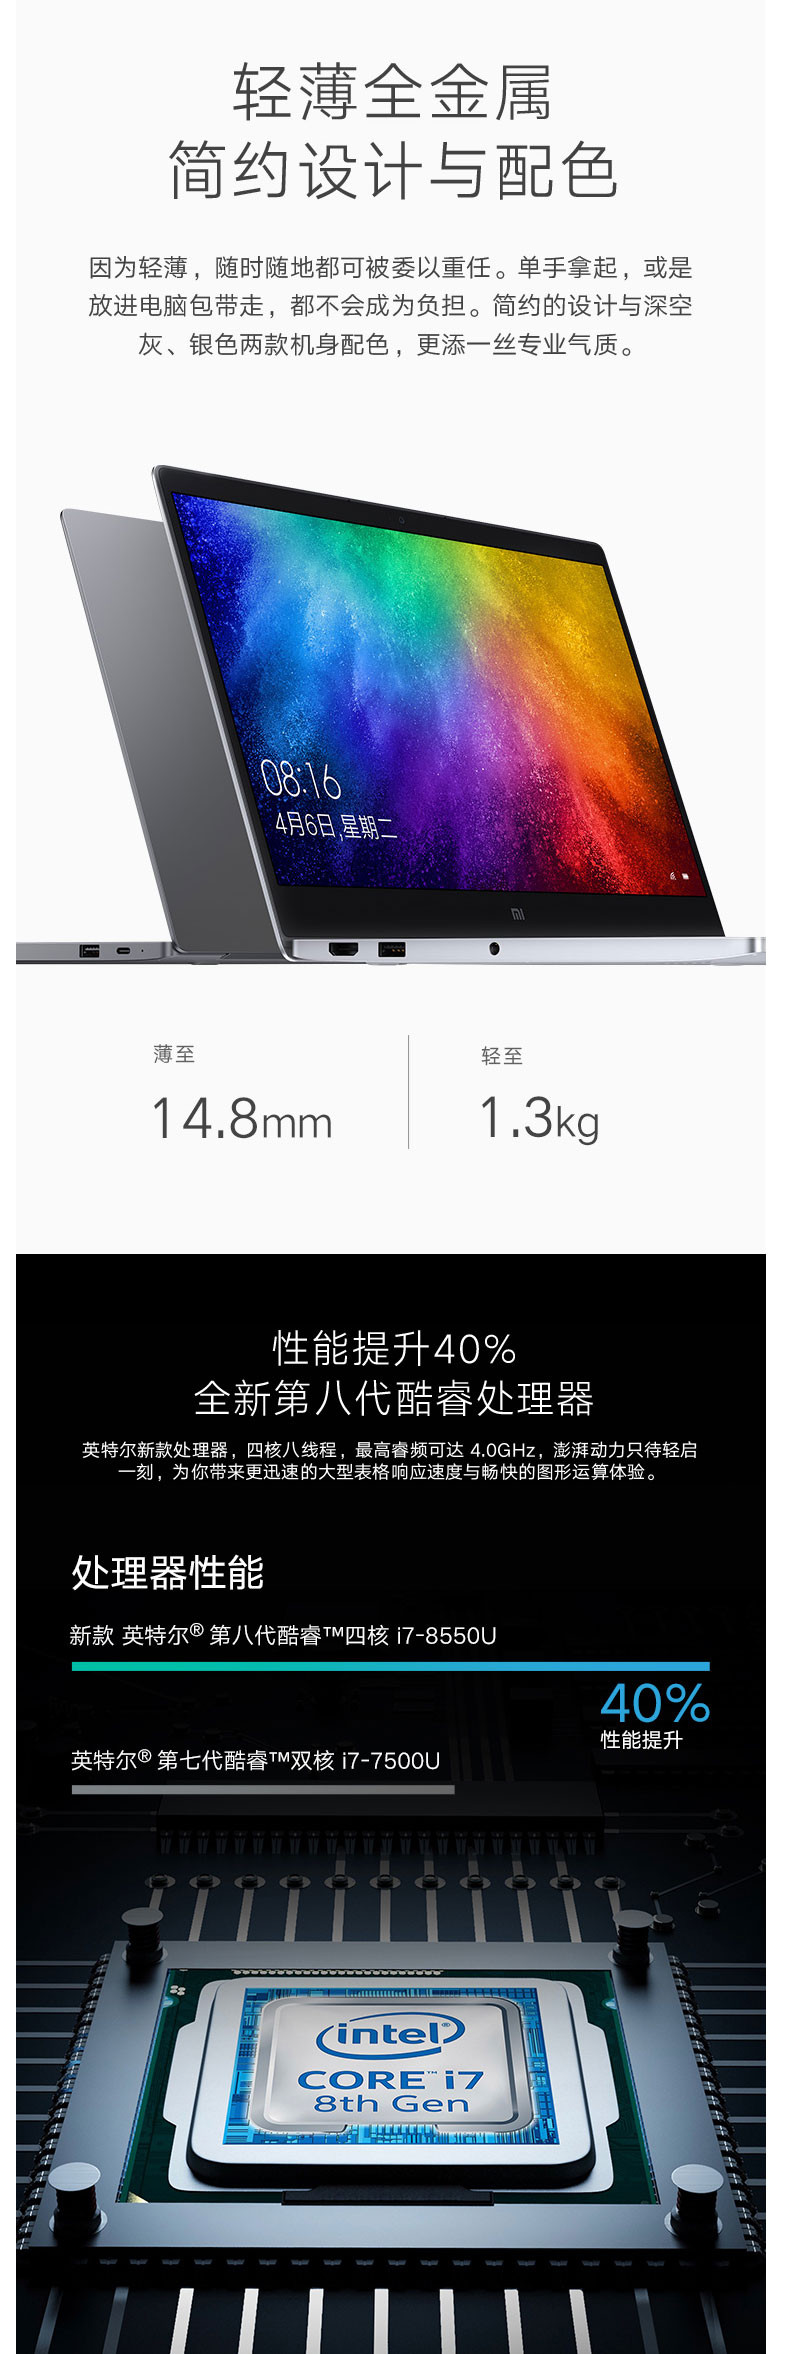 小米/MIUI Air 13.3英寸全金属超轻薄笔记本电脑/i7-8550U 8G 256G灰色银色